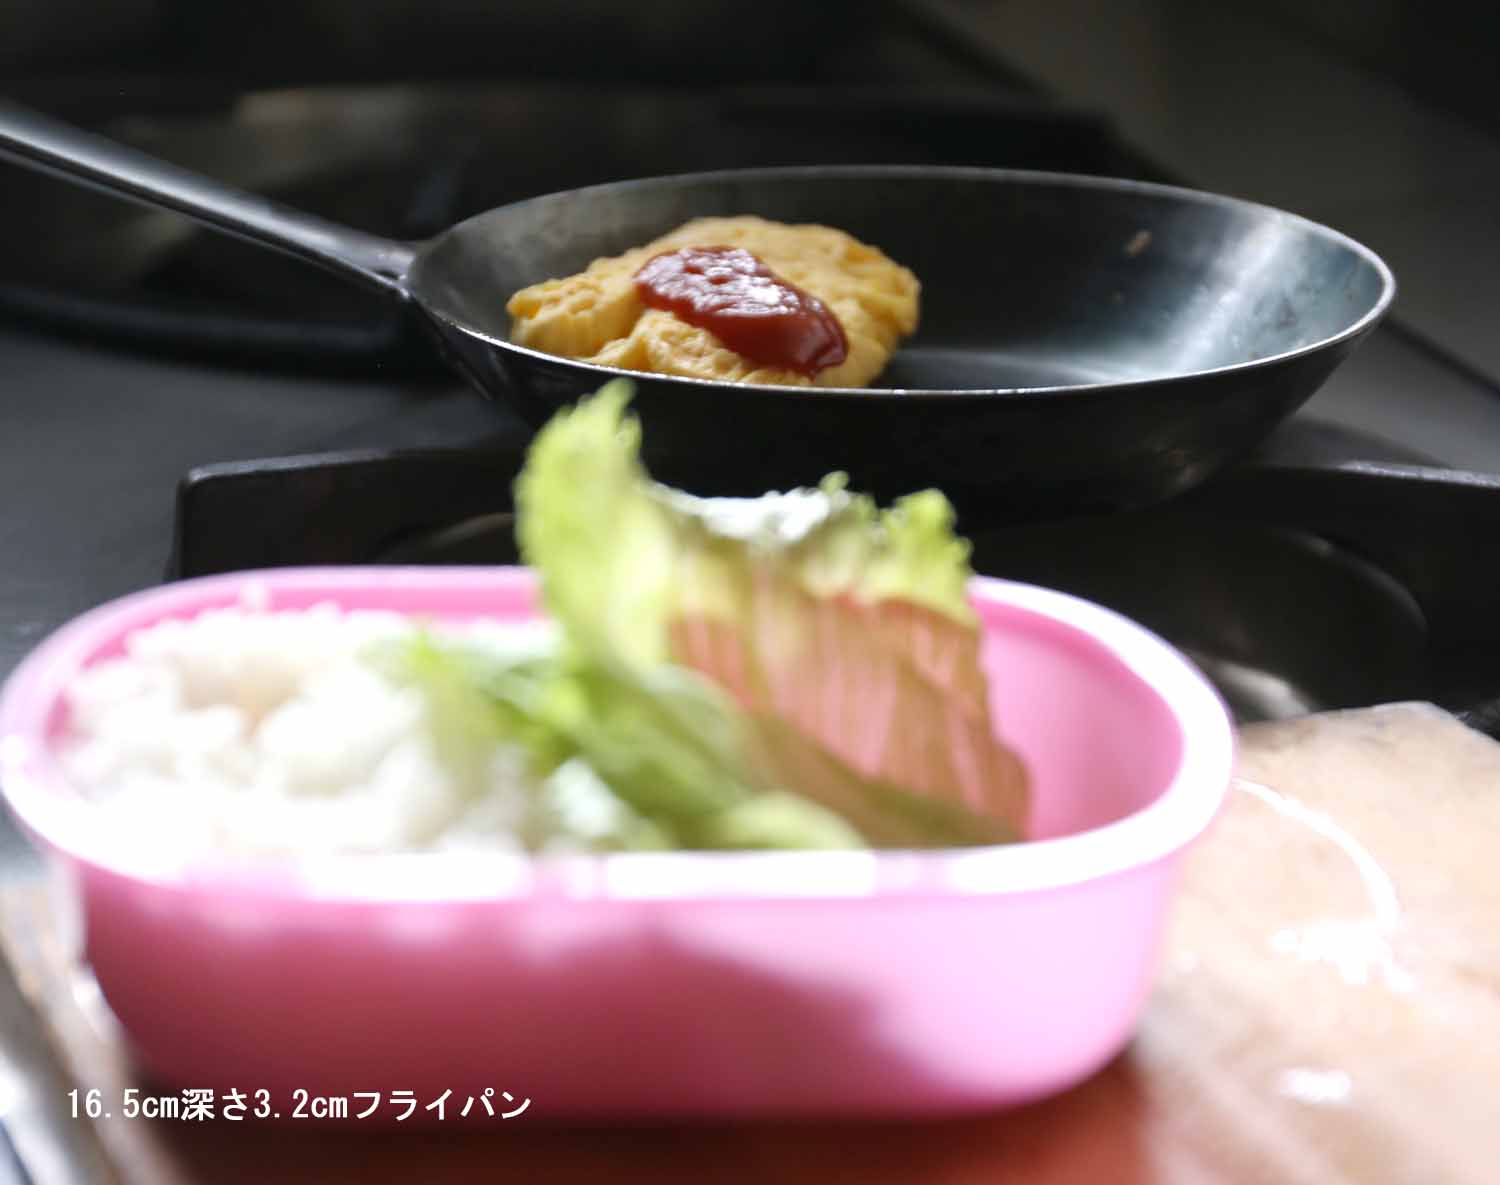 お弁当に入れる玉子焼きを16.5ｃｍ深型フライパンを使って焼いている写真です。鉄は難しいと言われますが、そんな事はありません。